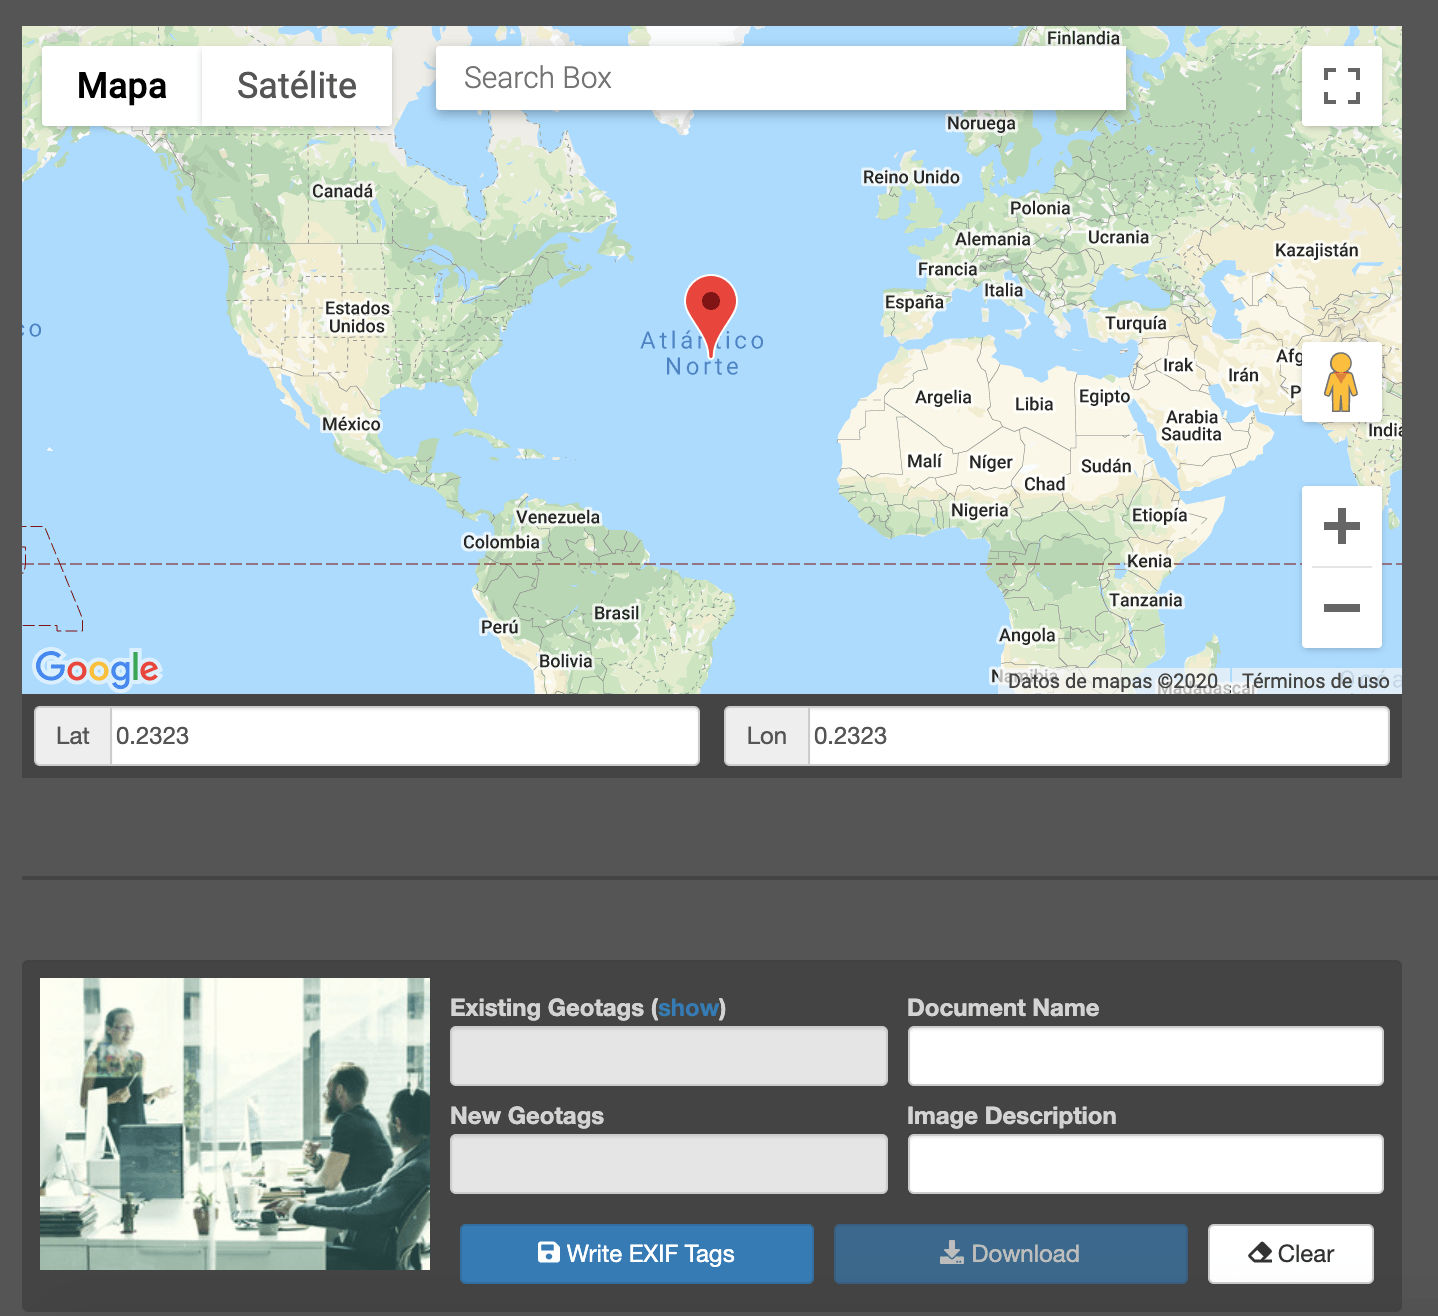 Captura de herramienta para geolocalizar imágenes en el mapa